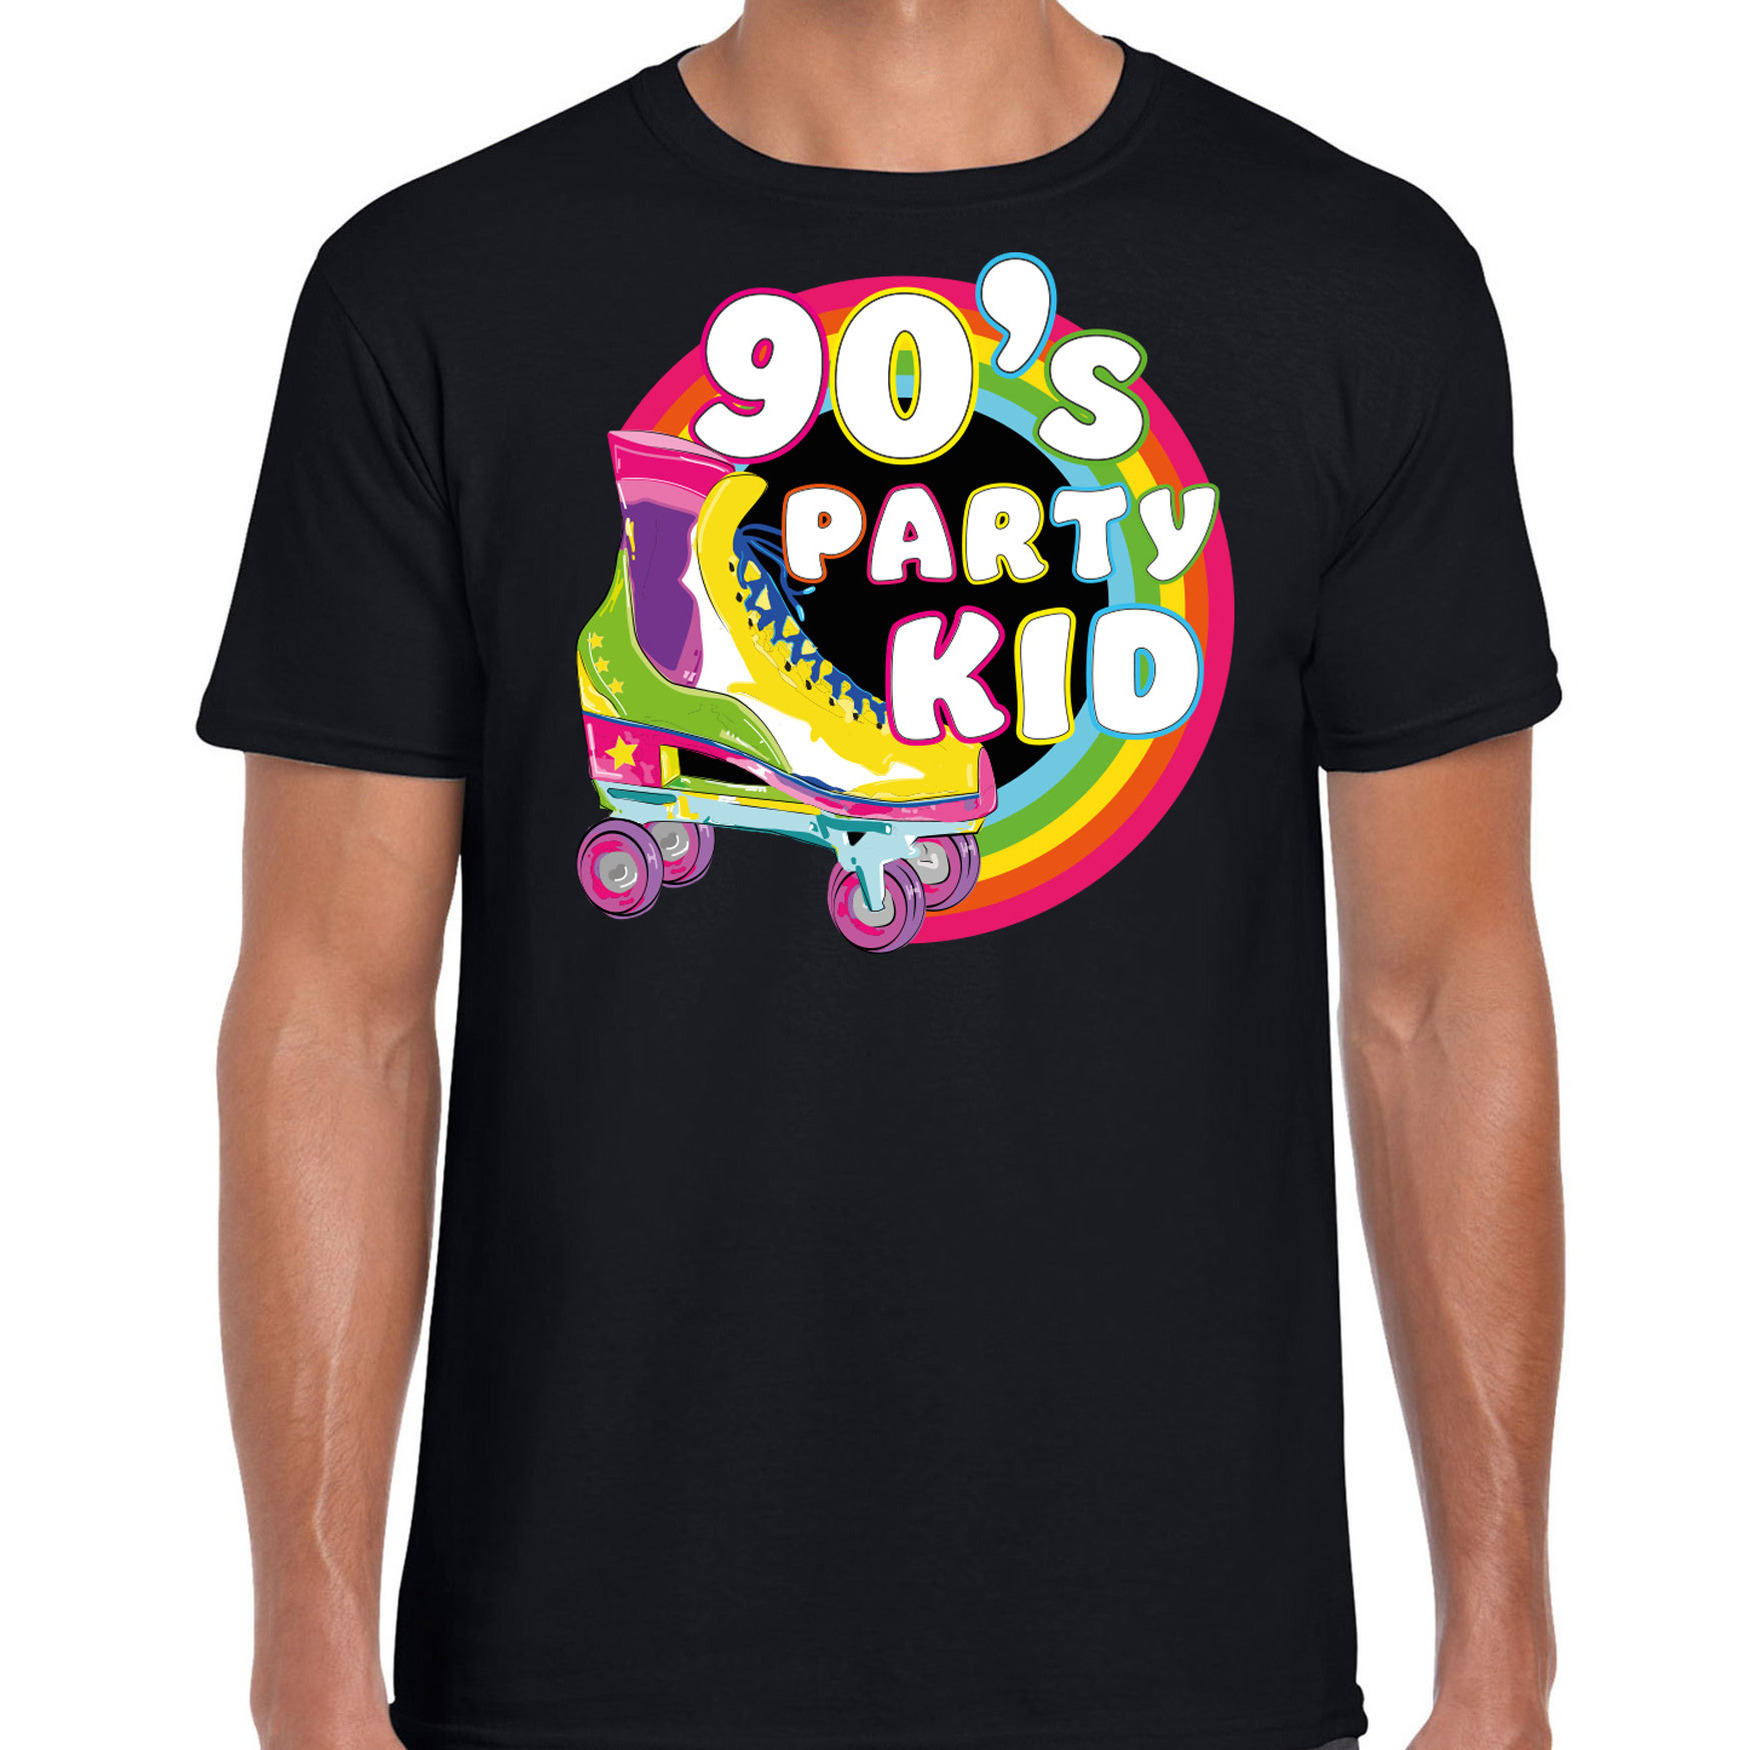 Bellatio Decorations nineties party verkleed t-shirt heren jaren 90 feest outfit 90s party kid zwart